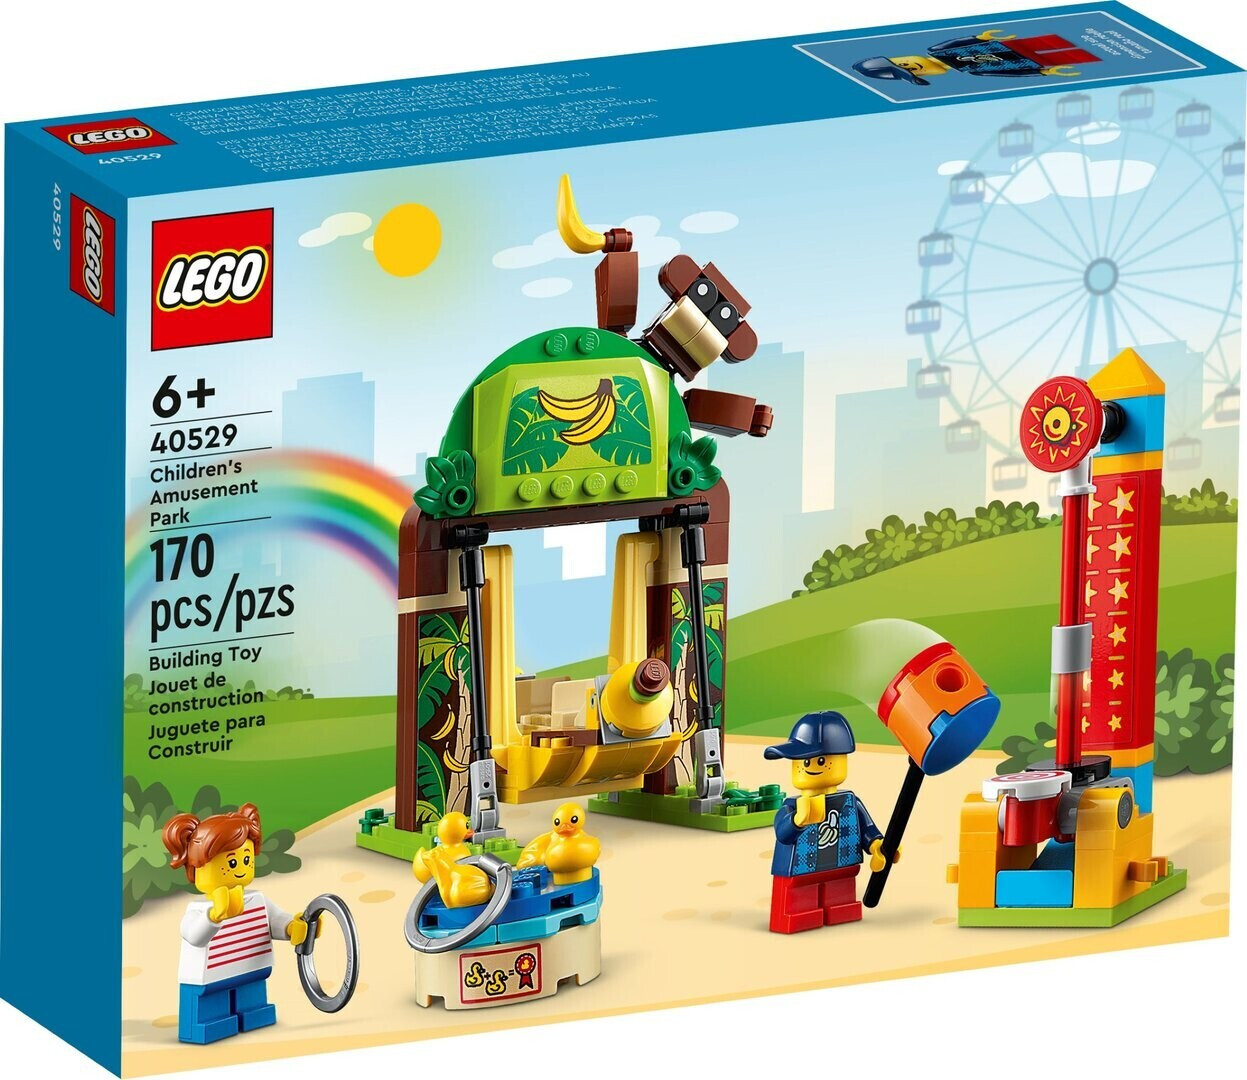 LEGO City - Kinder-Erlebnispark (40529) ab 7,65 € Preisvergleich idealo.de